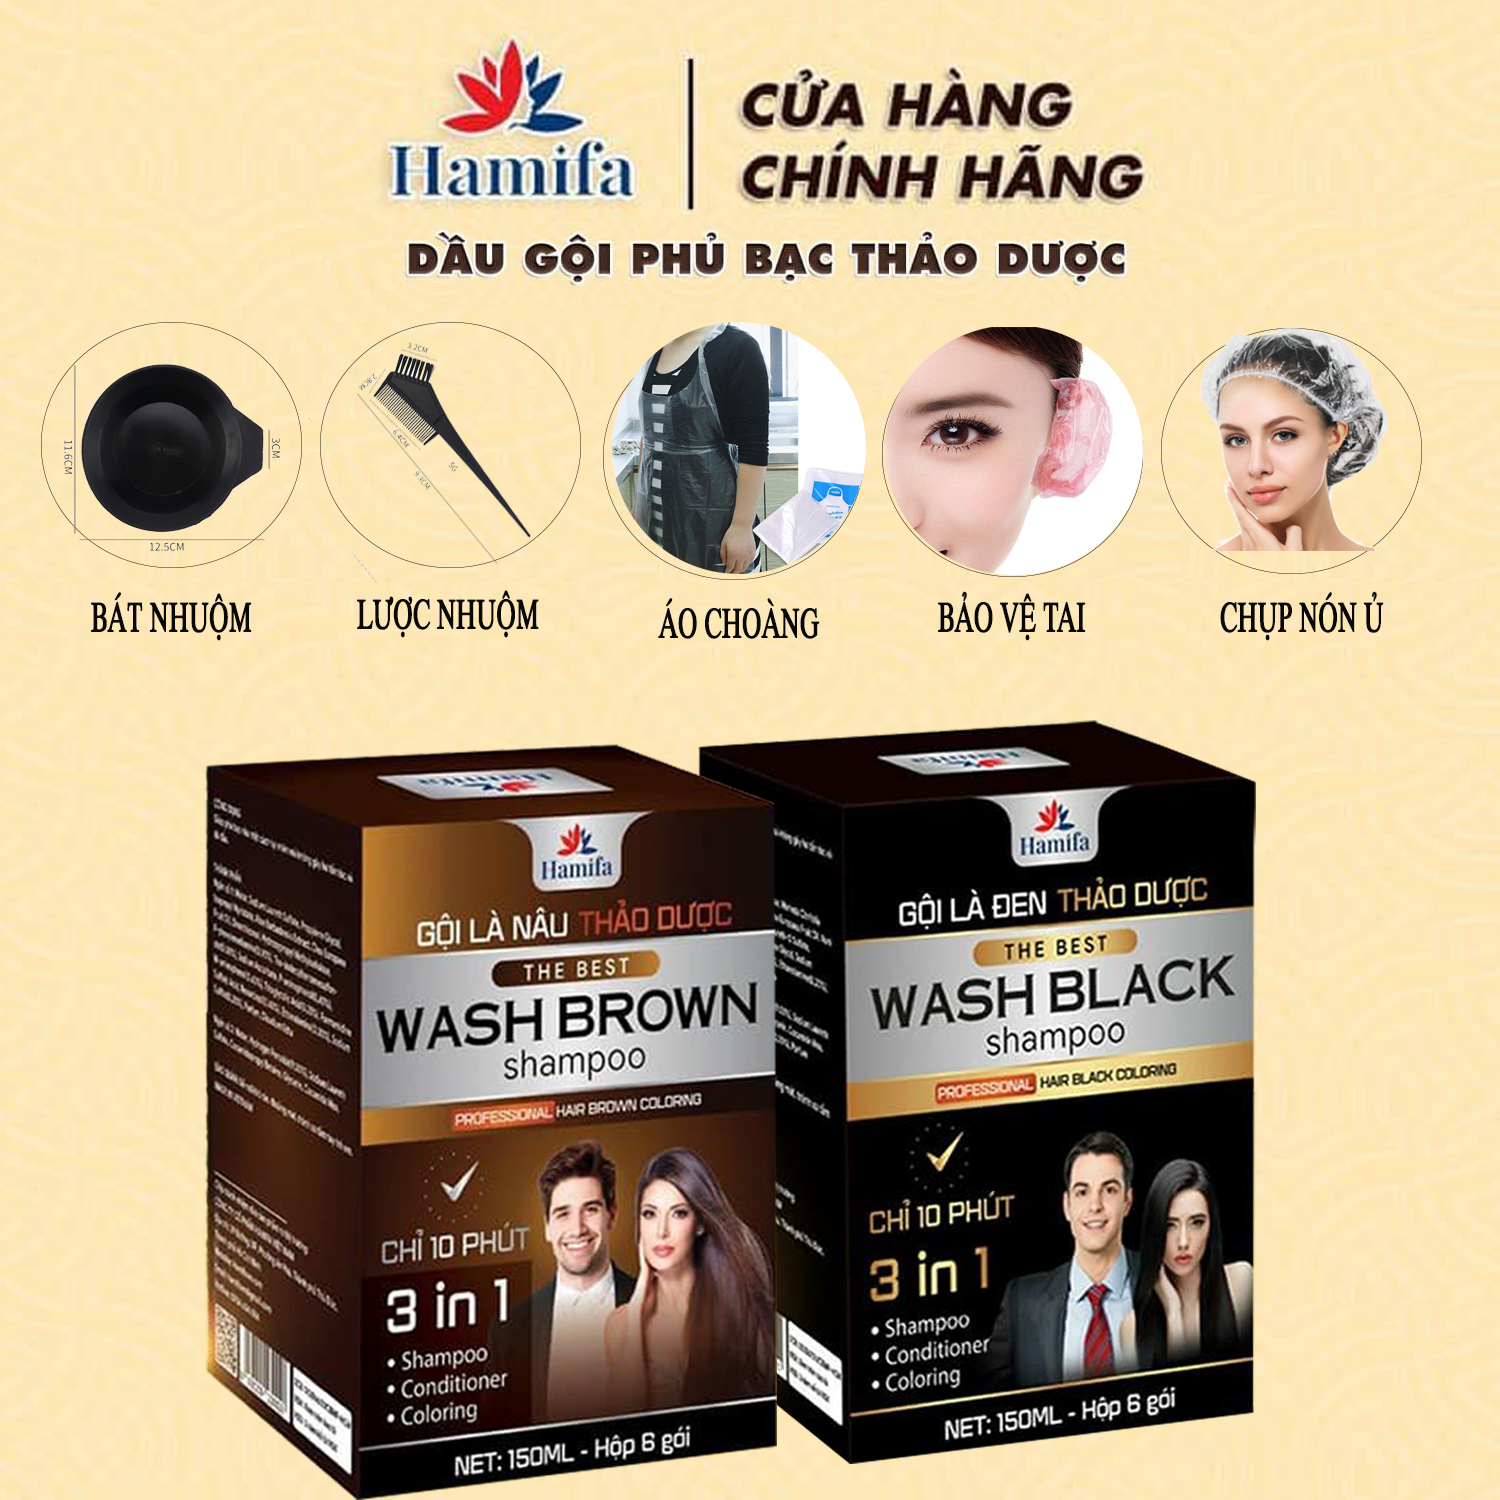 Dầu gội phủ bạc cải tiến Hamifa chính hãng - Gội đen hoặc nâu với 6 tinh chất thảo dược thiên nhiên, giúp tăng cường và bảo vệ tóc